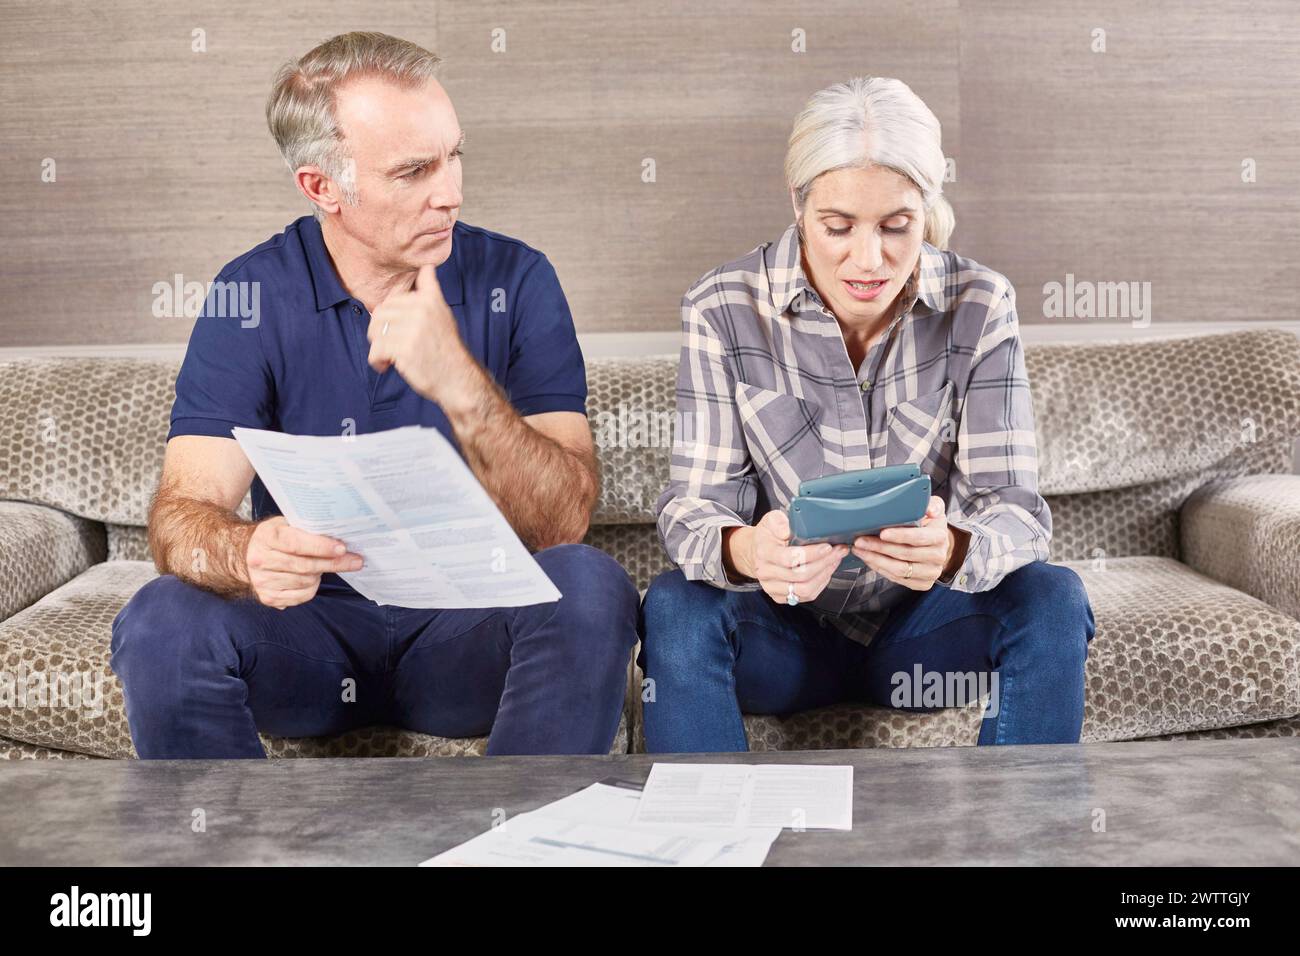 Deux adultes examinant des documents sur un canapé Banque D'Images